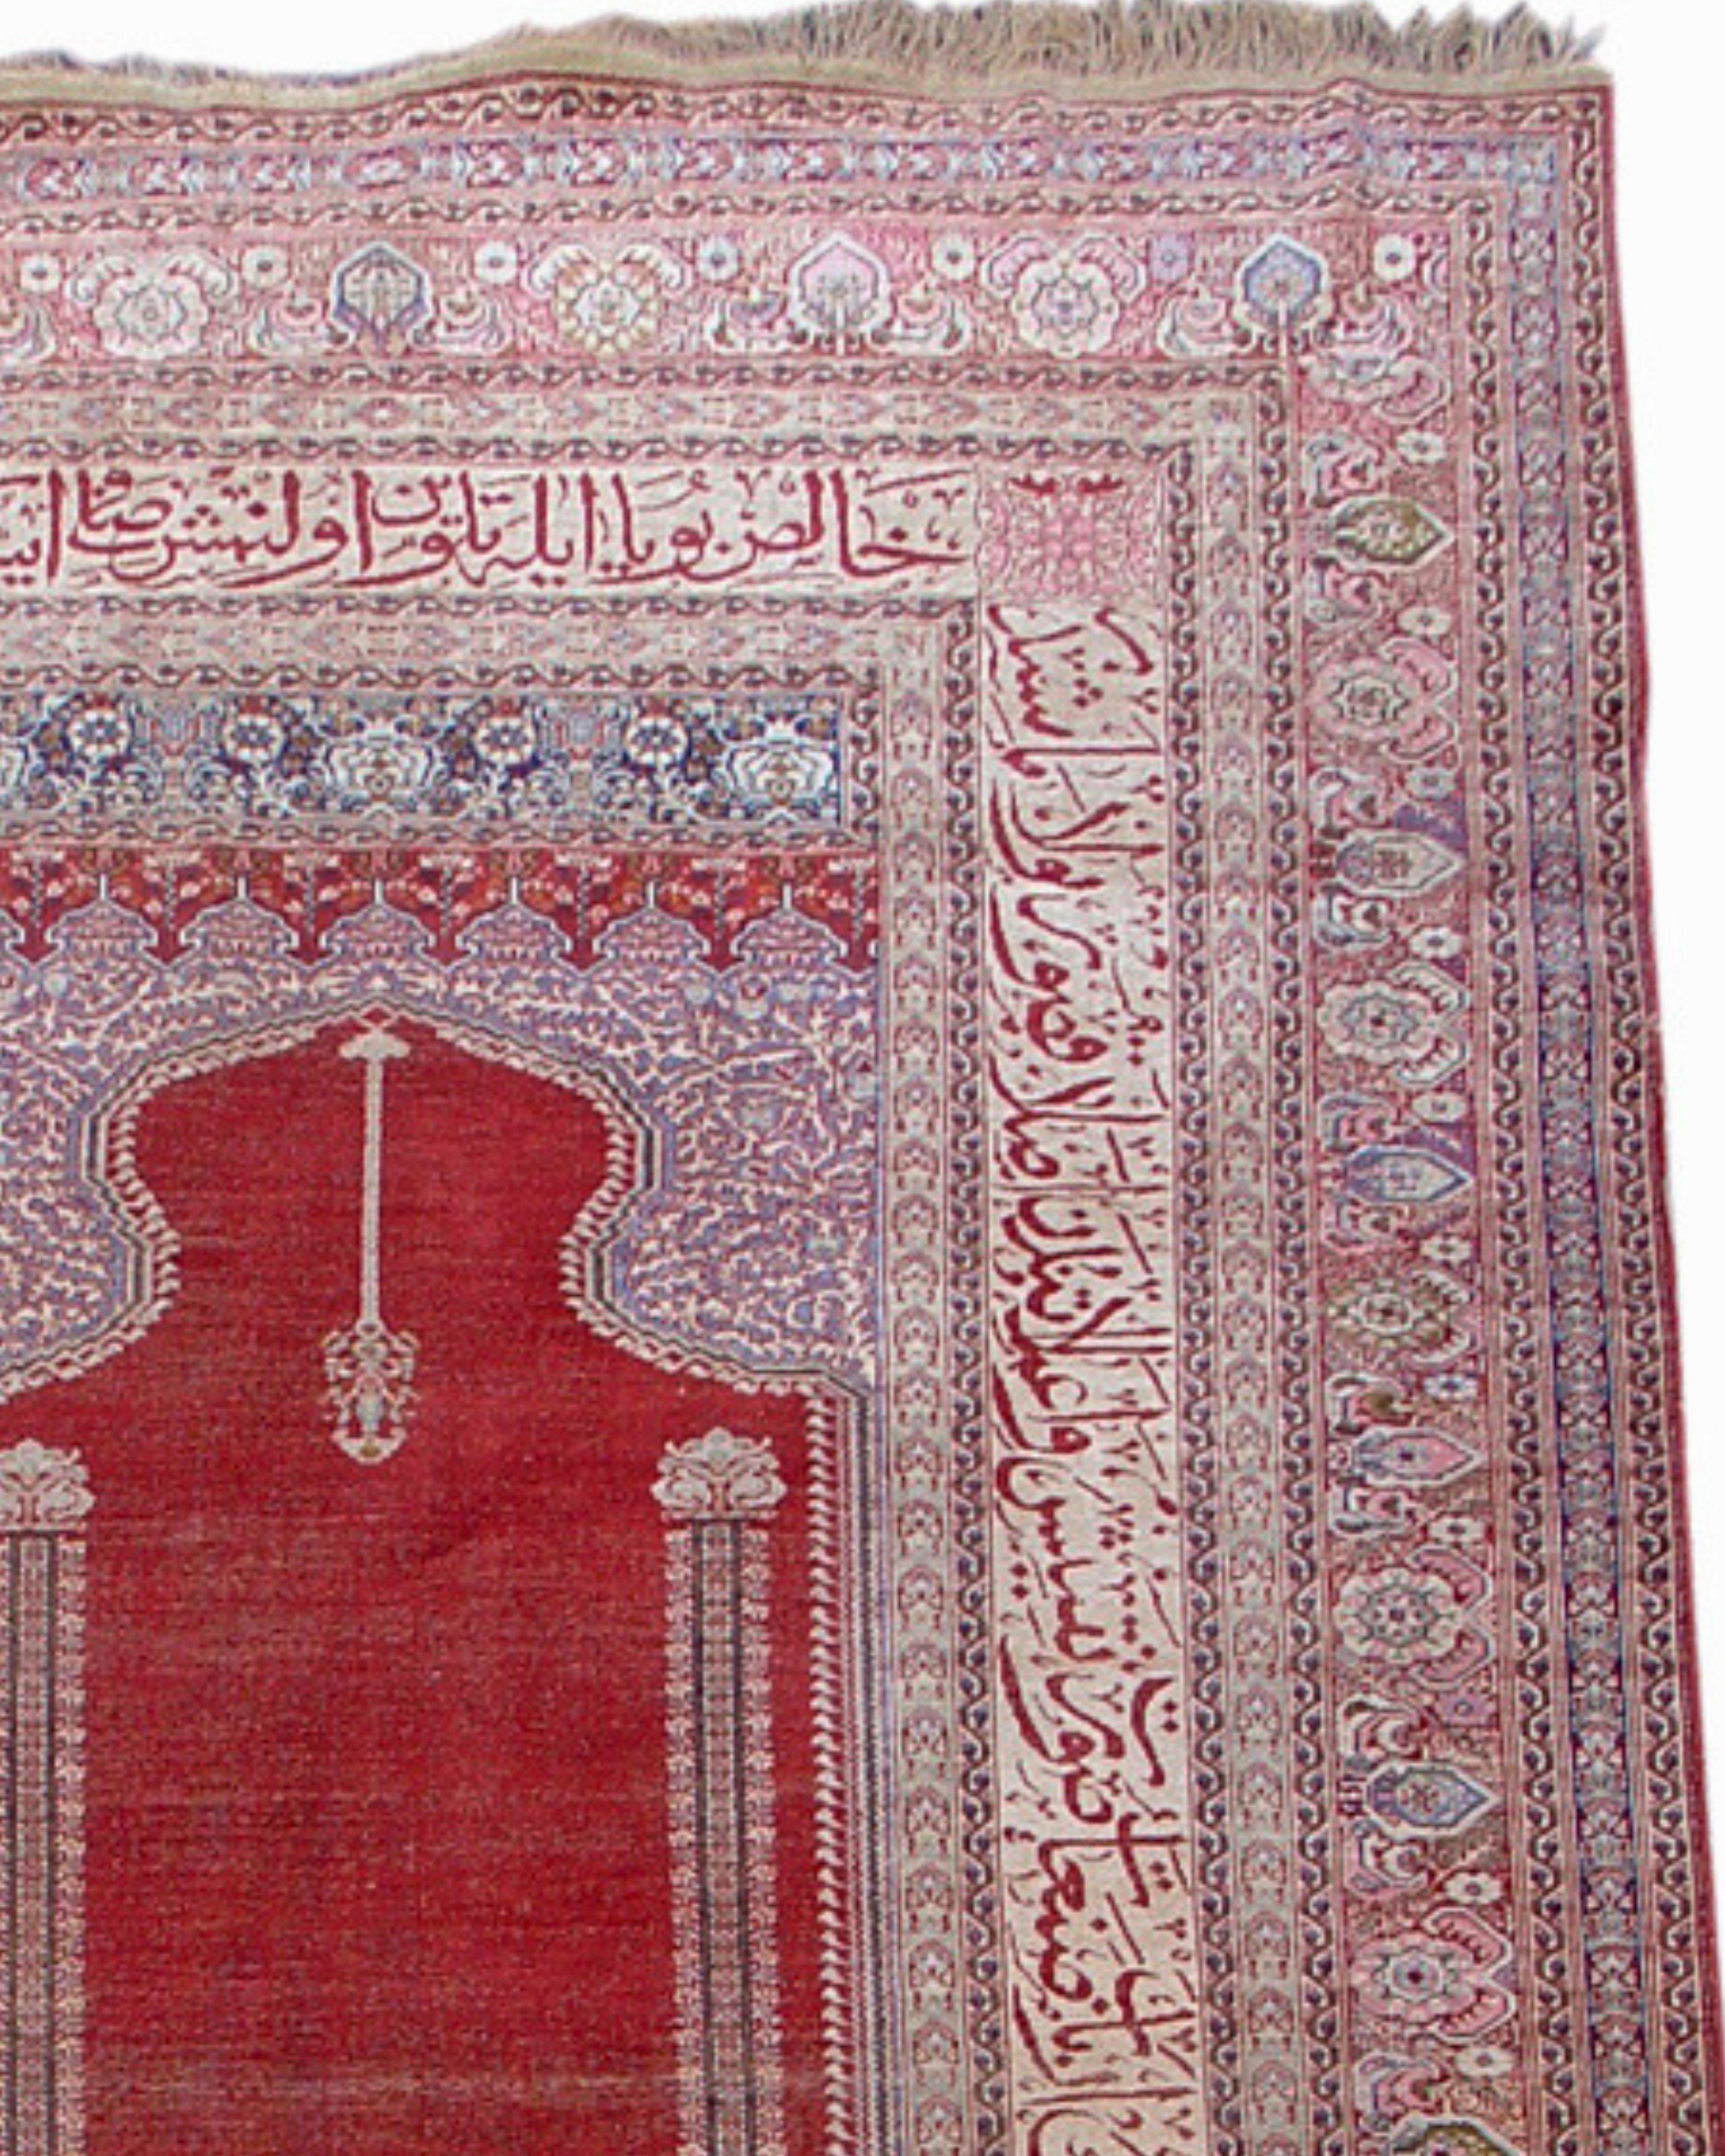 Antiker anatolischer Sivas-Teppich aus Seide, frühes 20. Jahrhundert

Zusätzliche Informationen:
Abmessungen: 5'2 B x 7'1